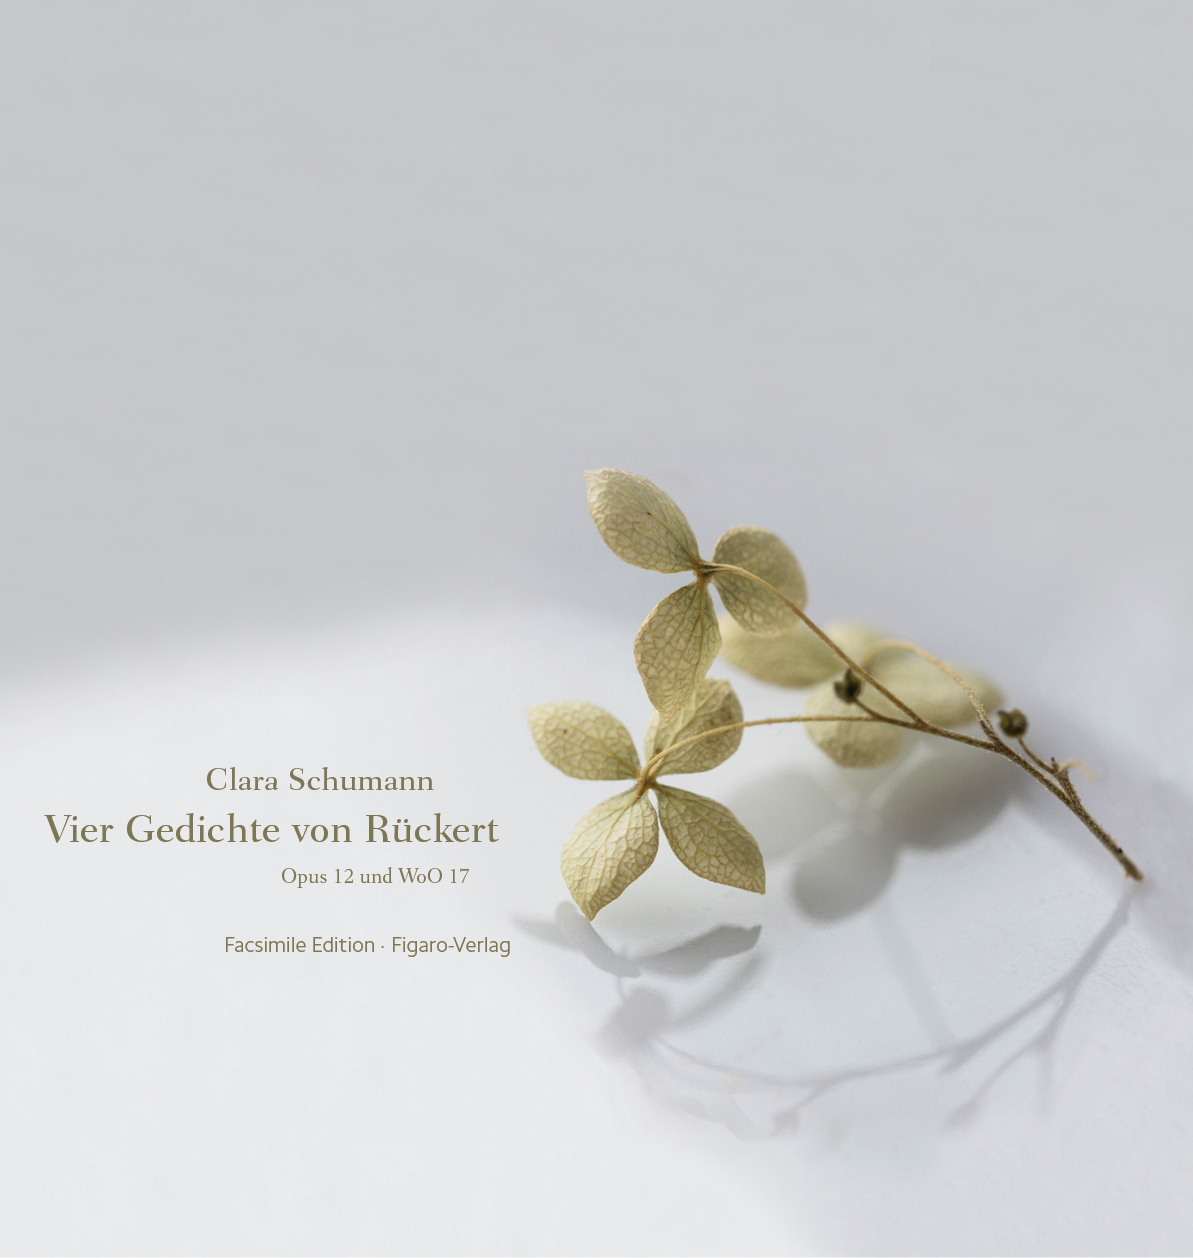 Clara Schumann, Vier Gedichte von Rückert (op. 12 und WoO 17)